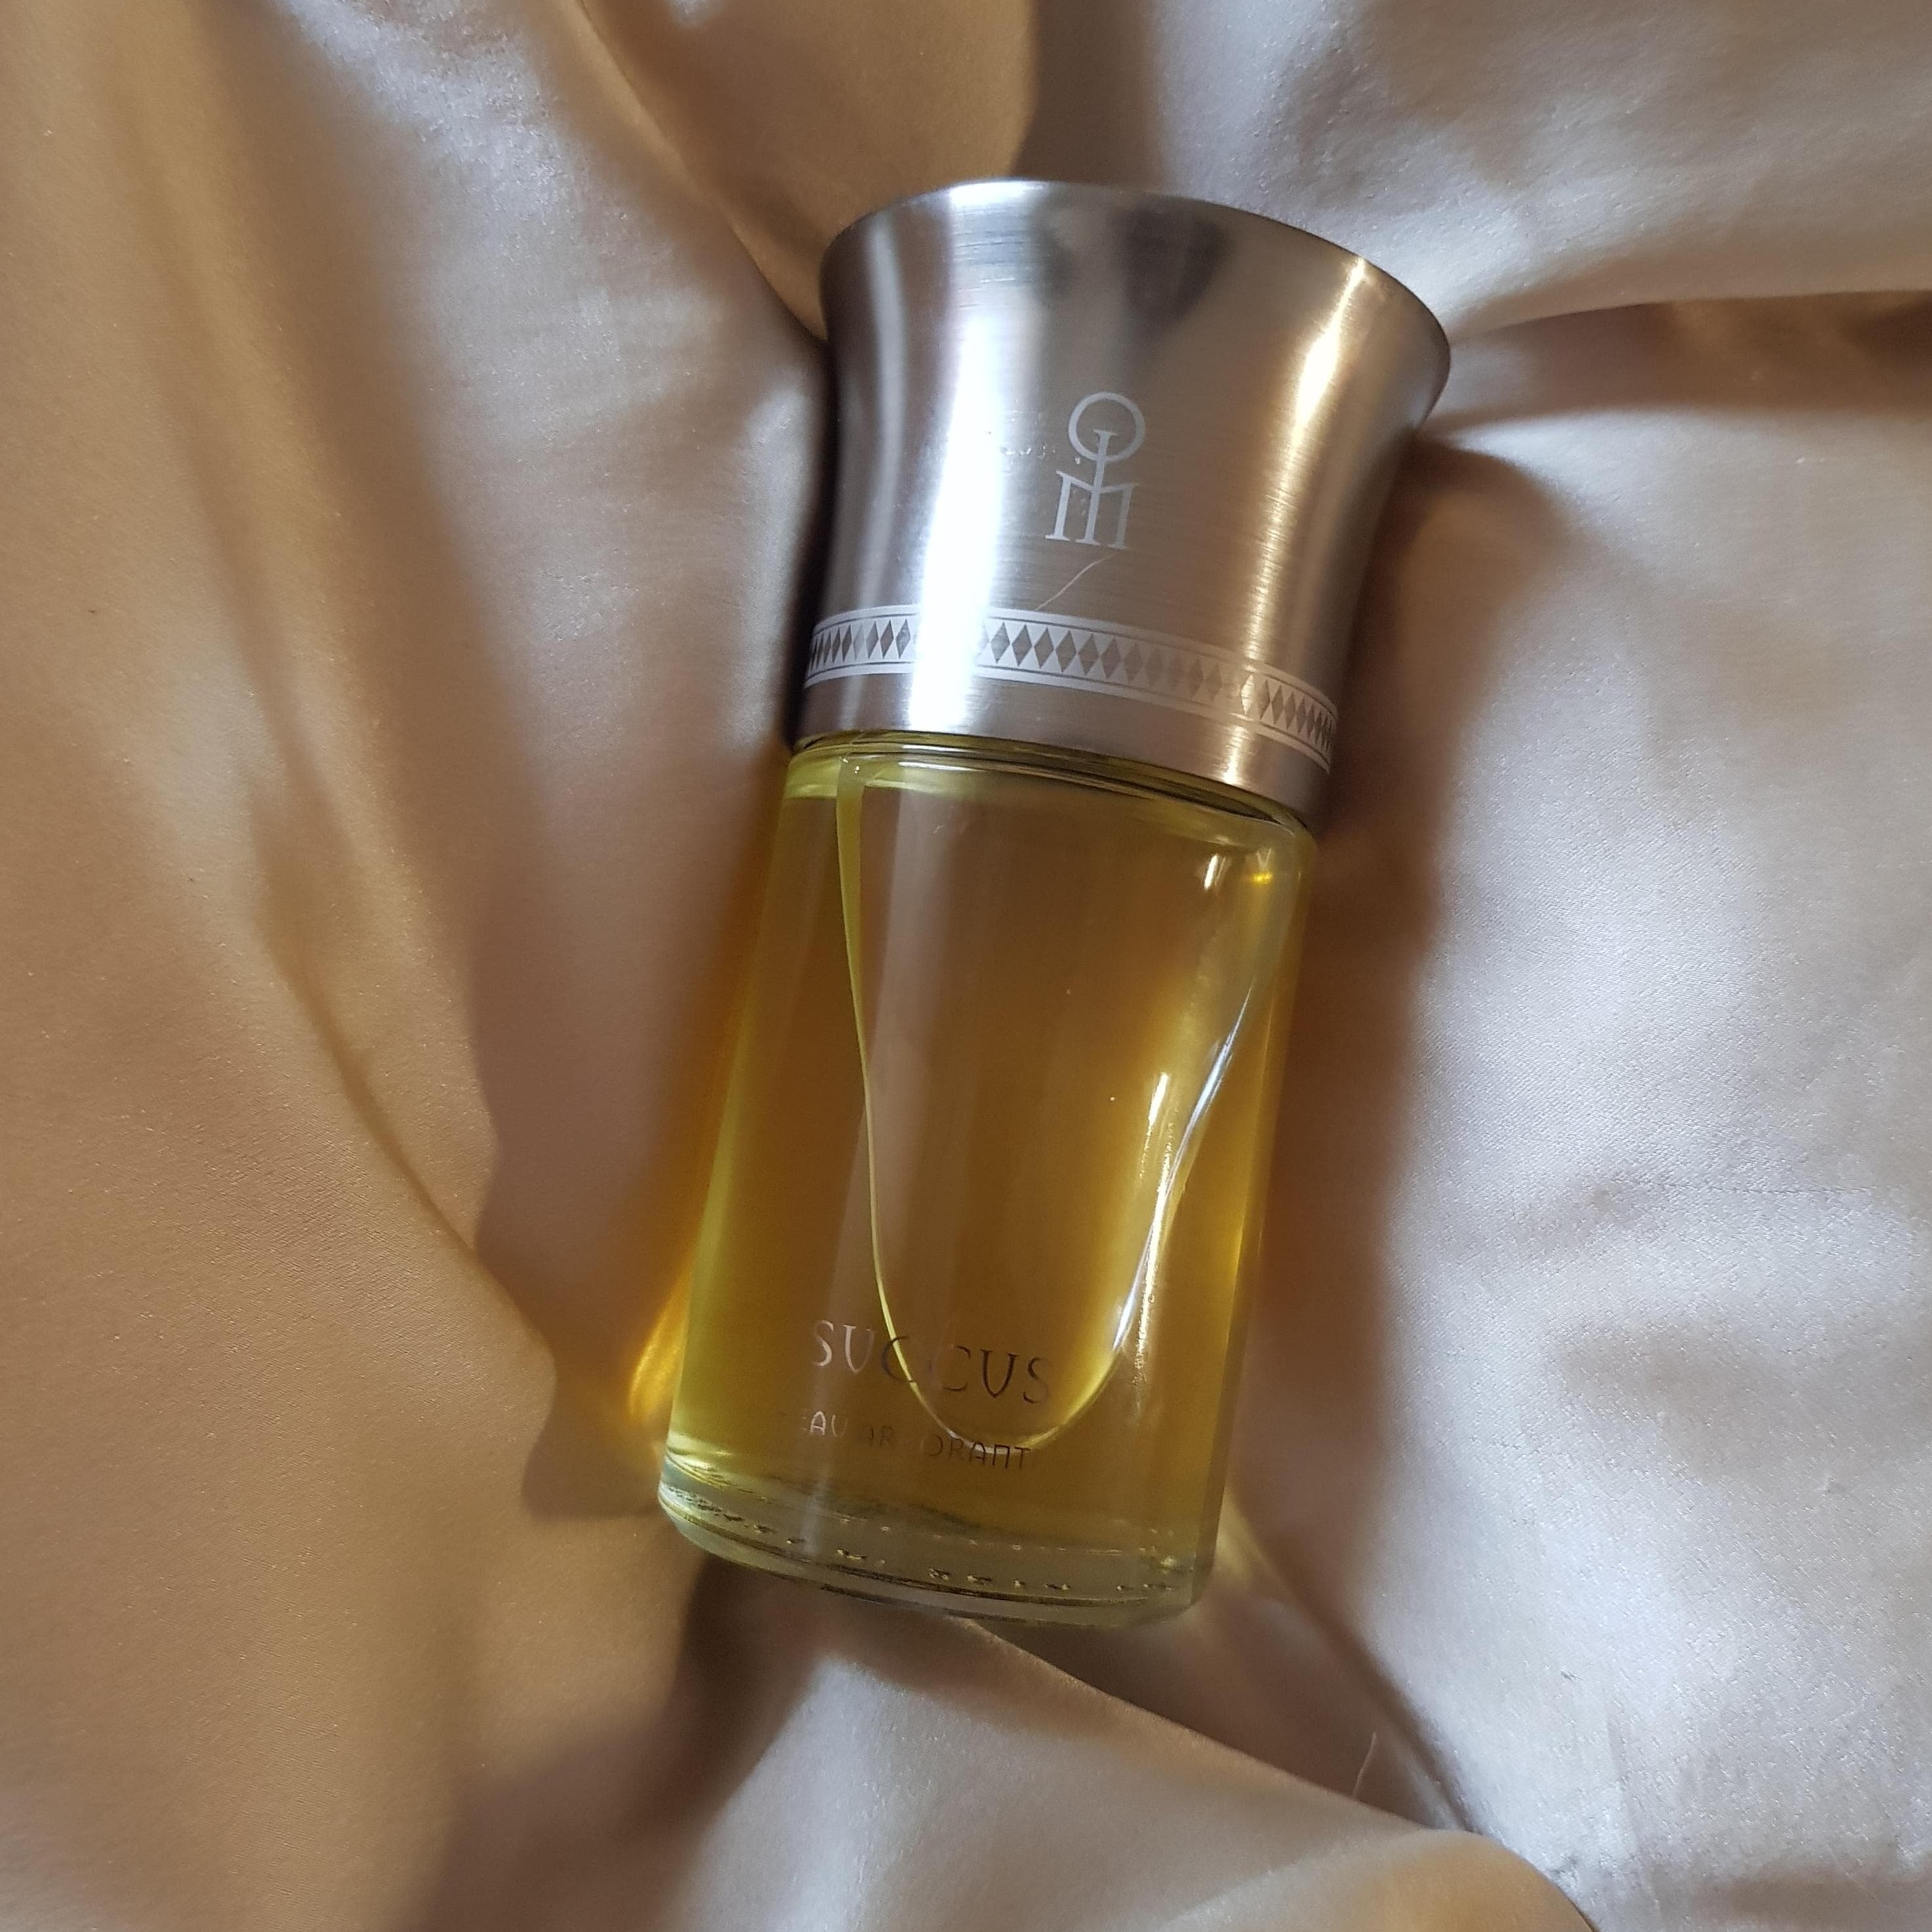 Liquides Imaginaires Succus EDP | My Perfume Shop Australia